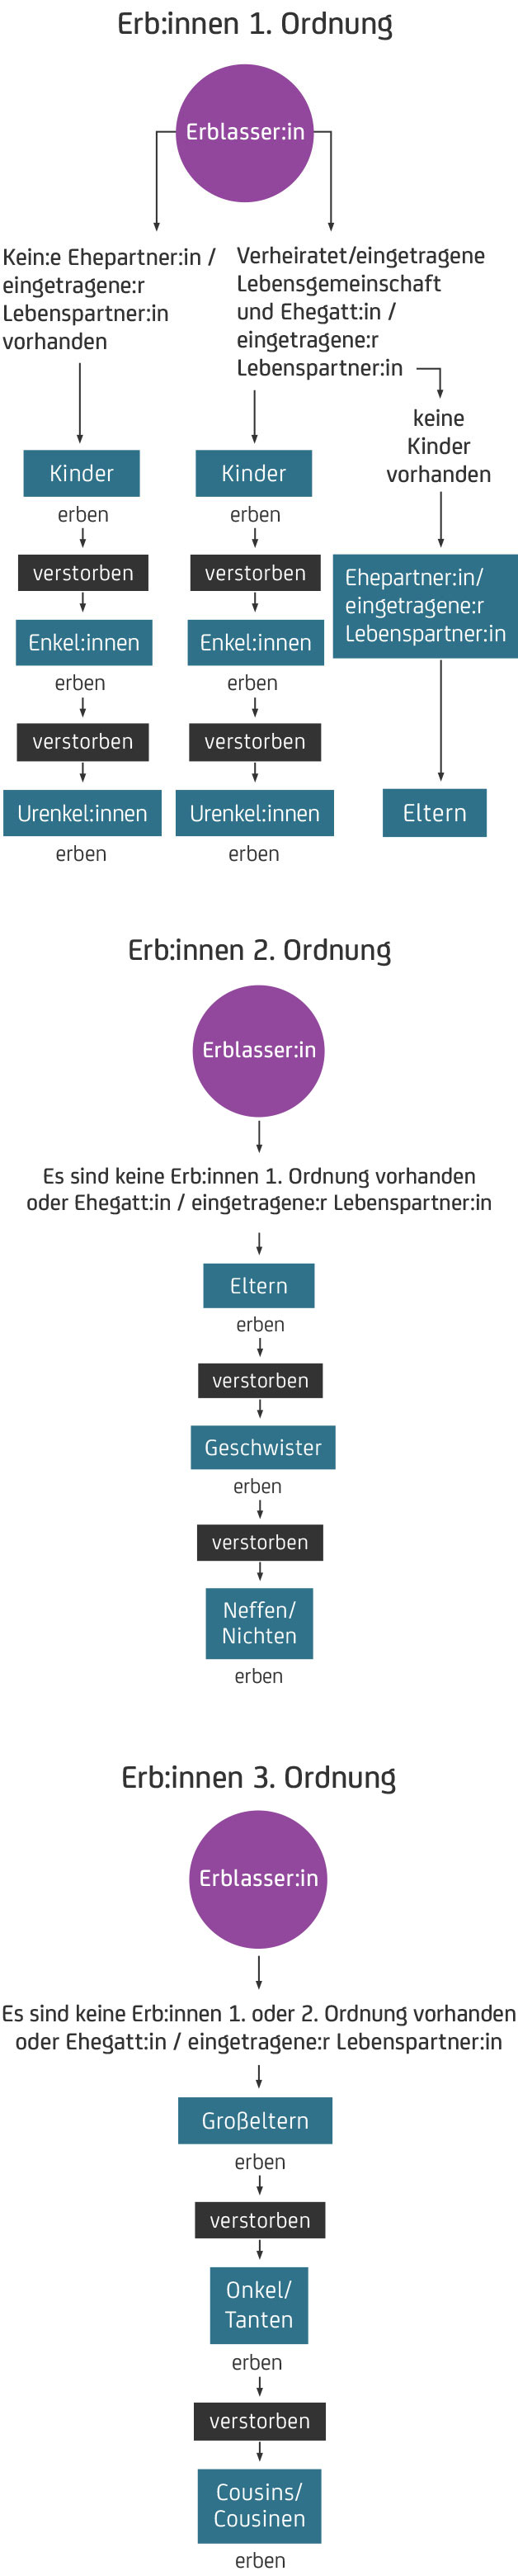 Die gesetzliche Erbfolge - Erben 1., 2. und 3. Ordnung